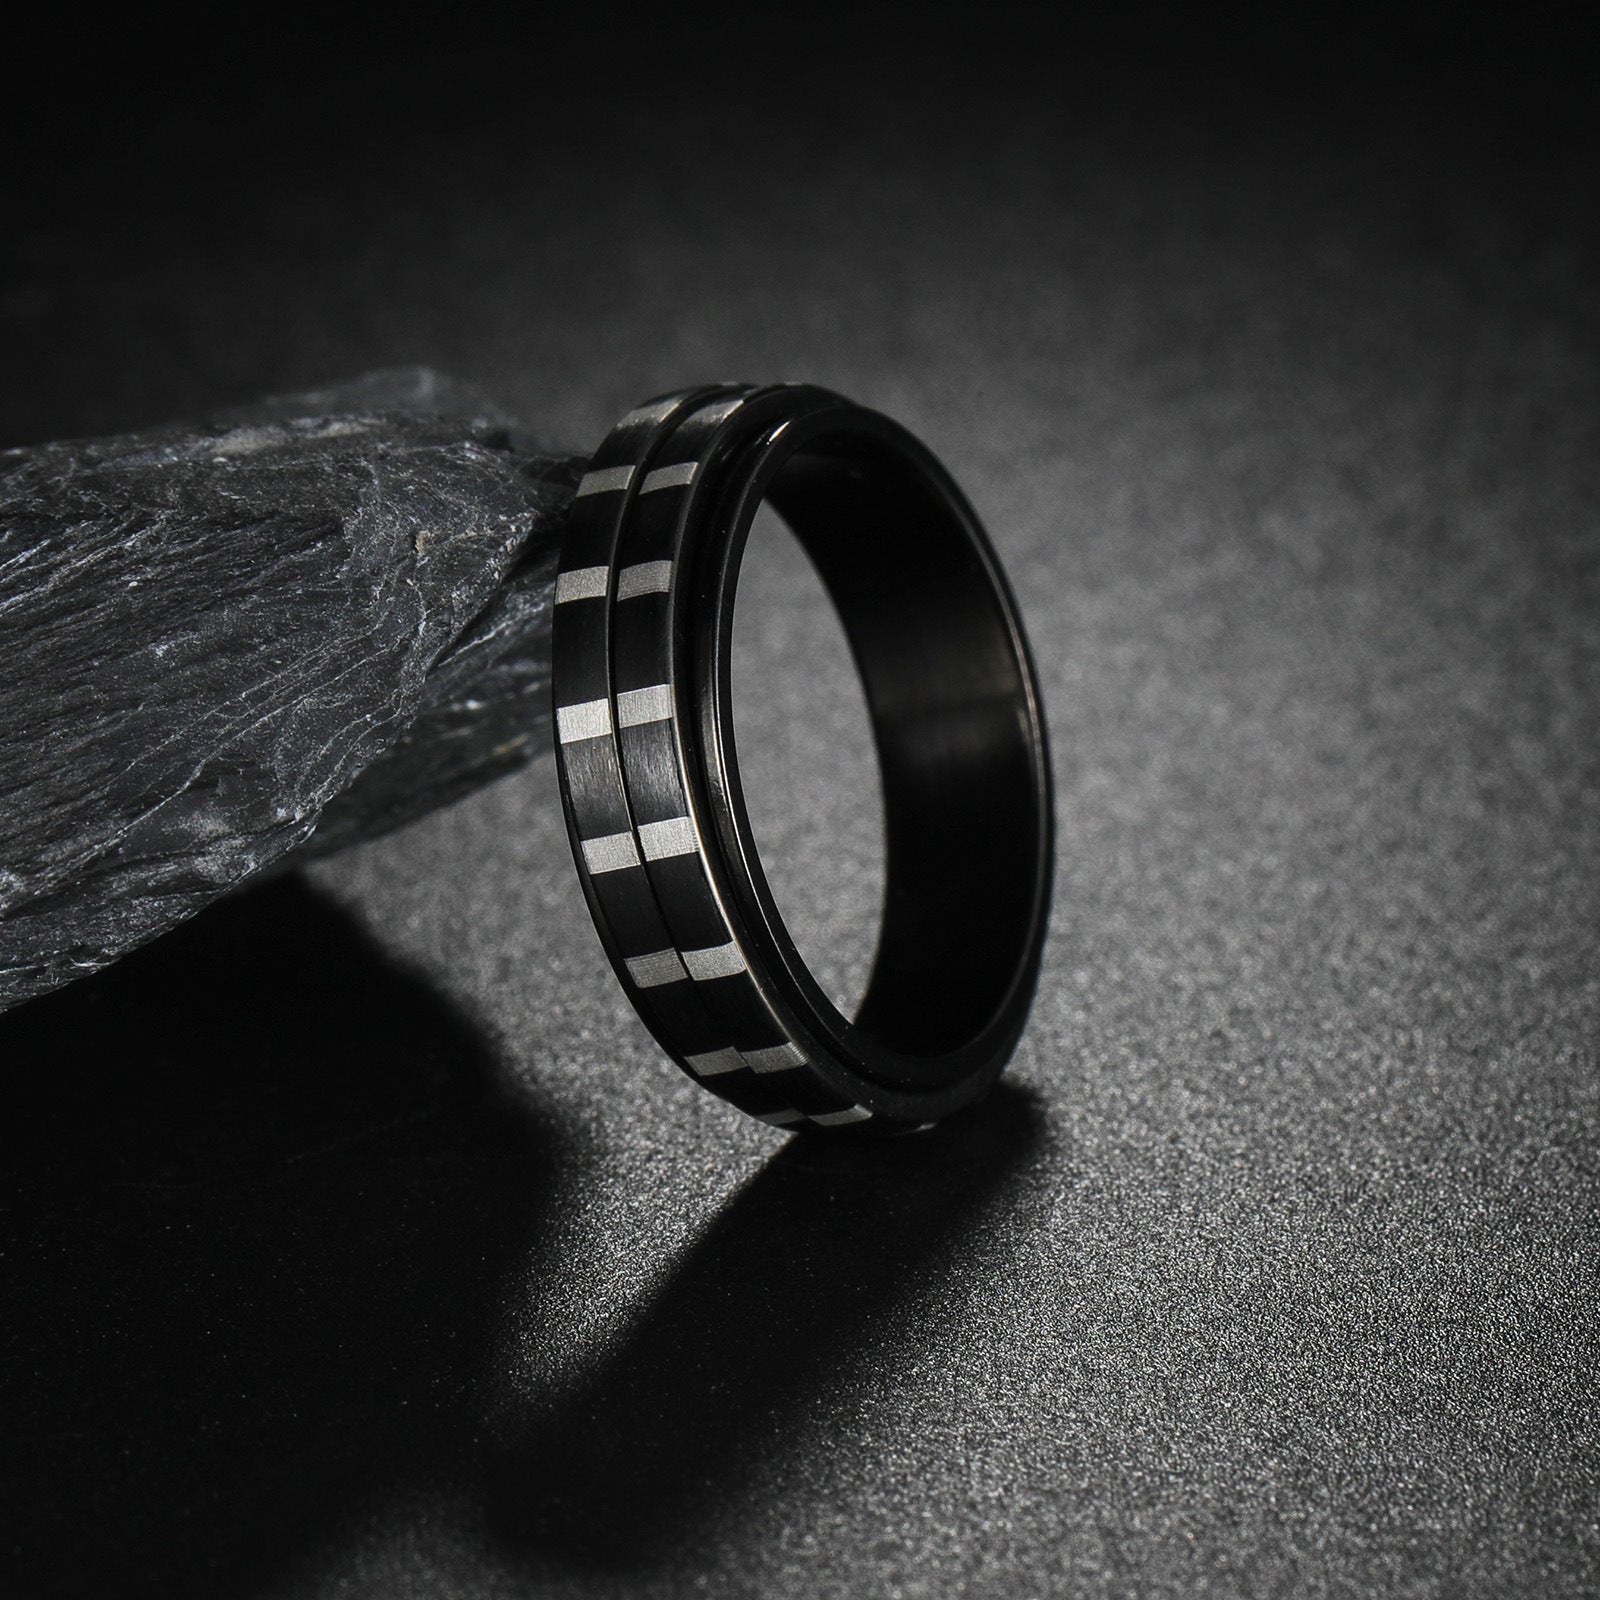 Decompression Rotatable Titanium Steel Ring 6mm